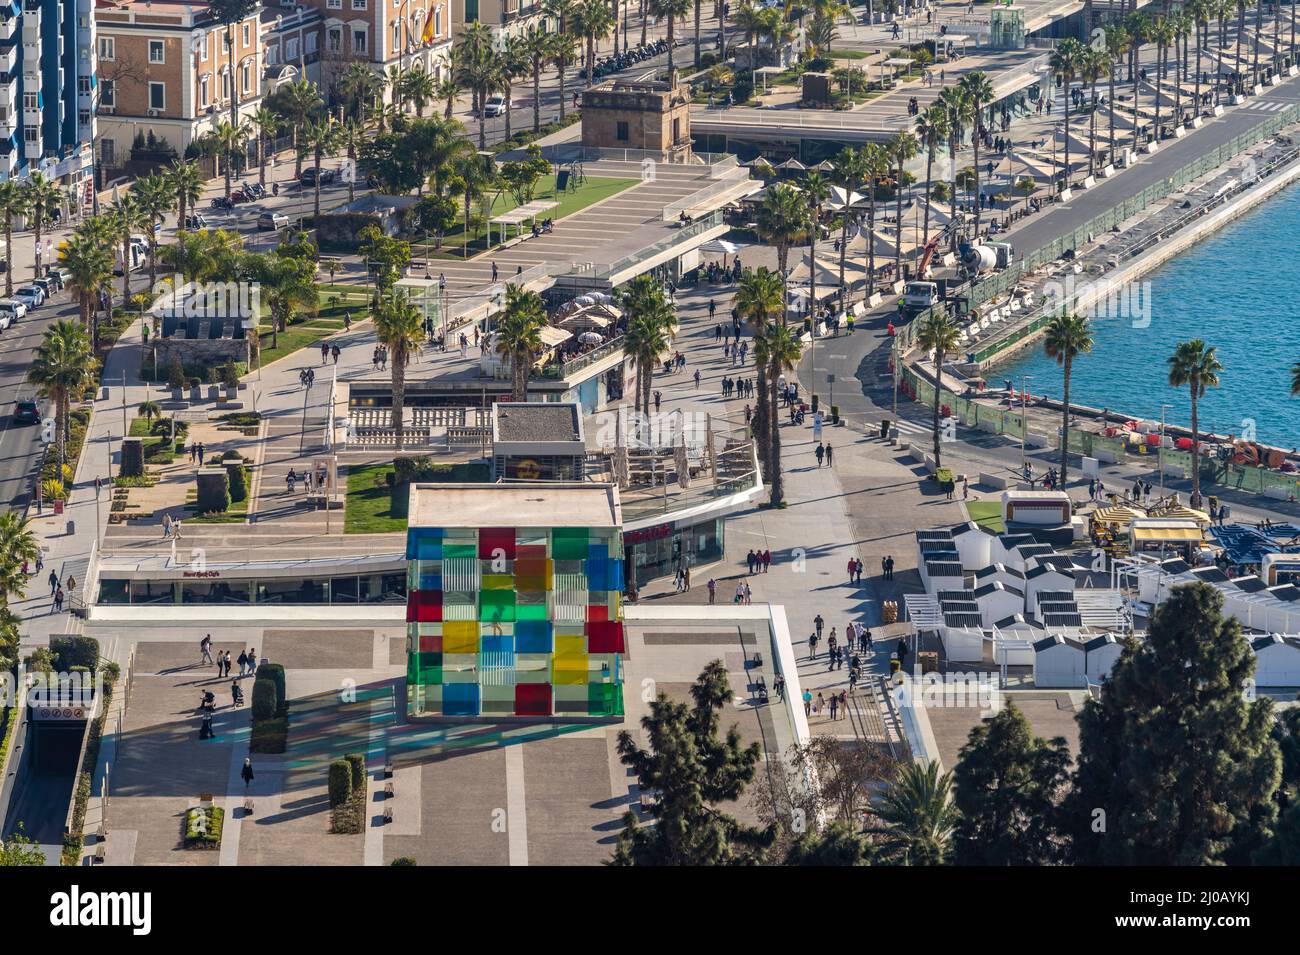 Hafen-Promenade  Muelle Uno  mit dem Museum Pompidou von oben gesehen, Málaga, Andalusien, Spanien  |  Harbour promenade Muelle Uno with Pompidou Cent Stock Photo